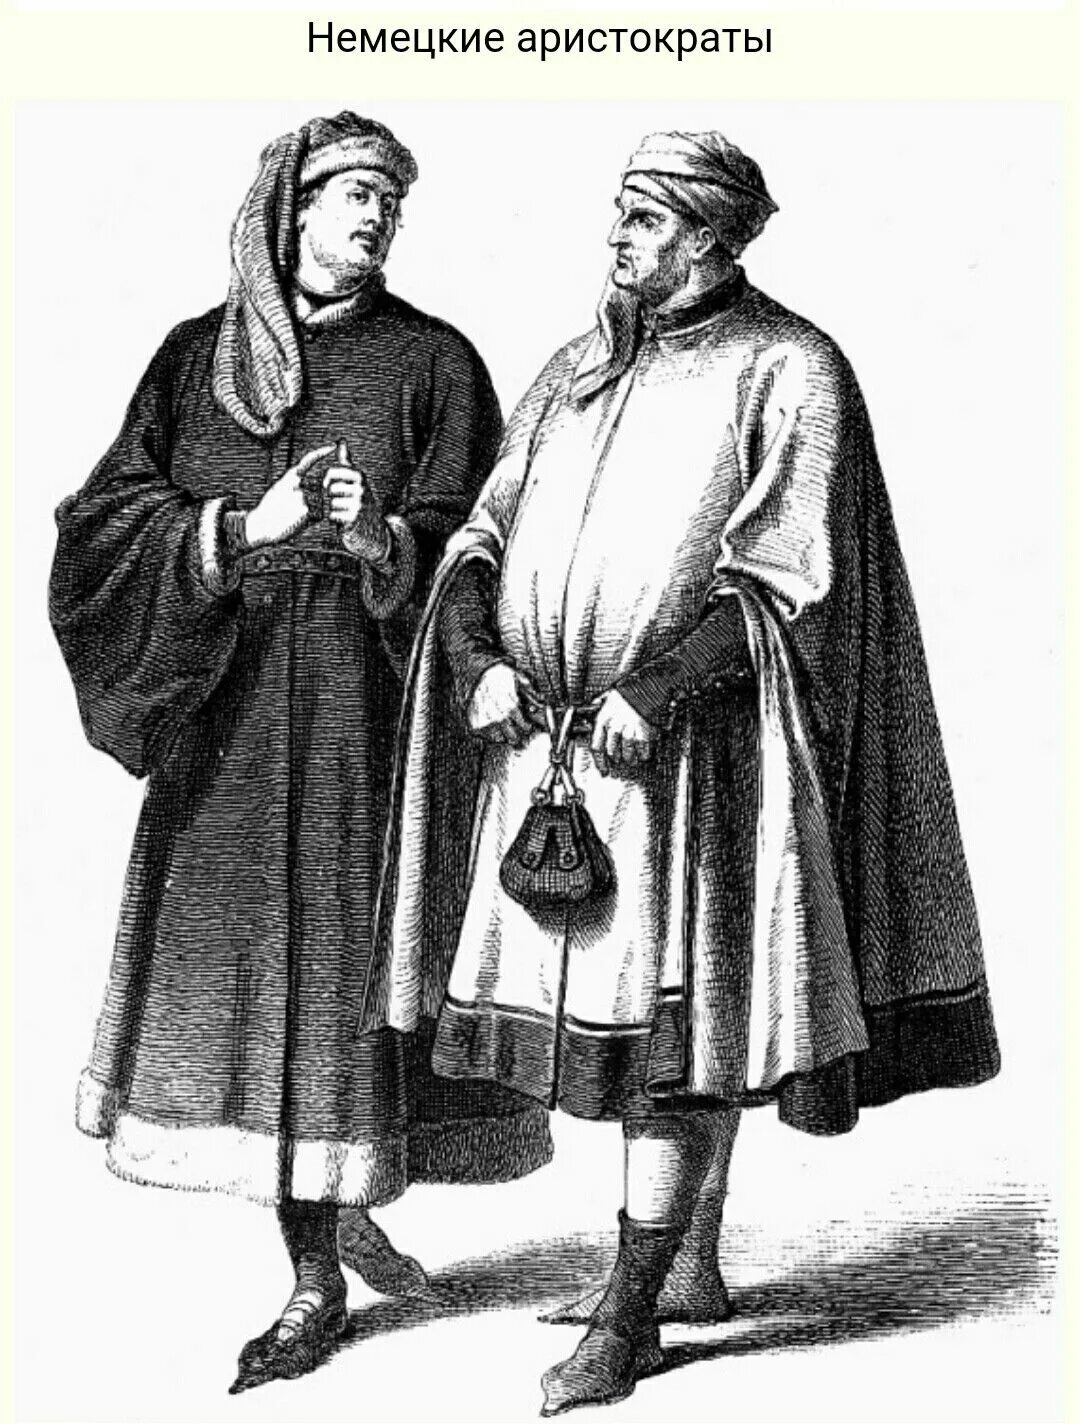 Ученые 14 века. Купец 17 века Европа. Одежда купца в 16-17 веках в Европе. Средневековый купец одеяние. Одежда средневекового купца.